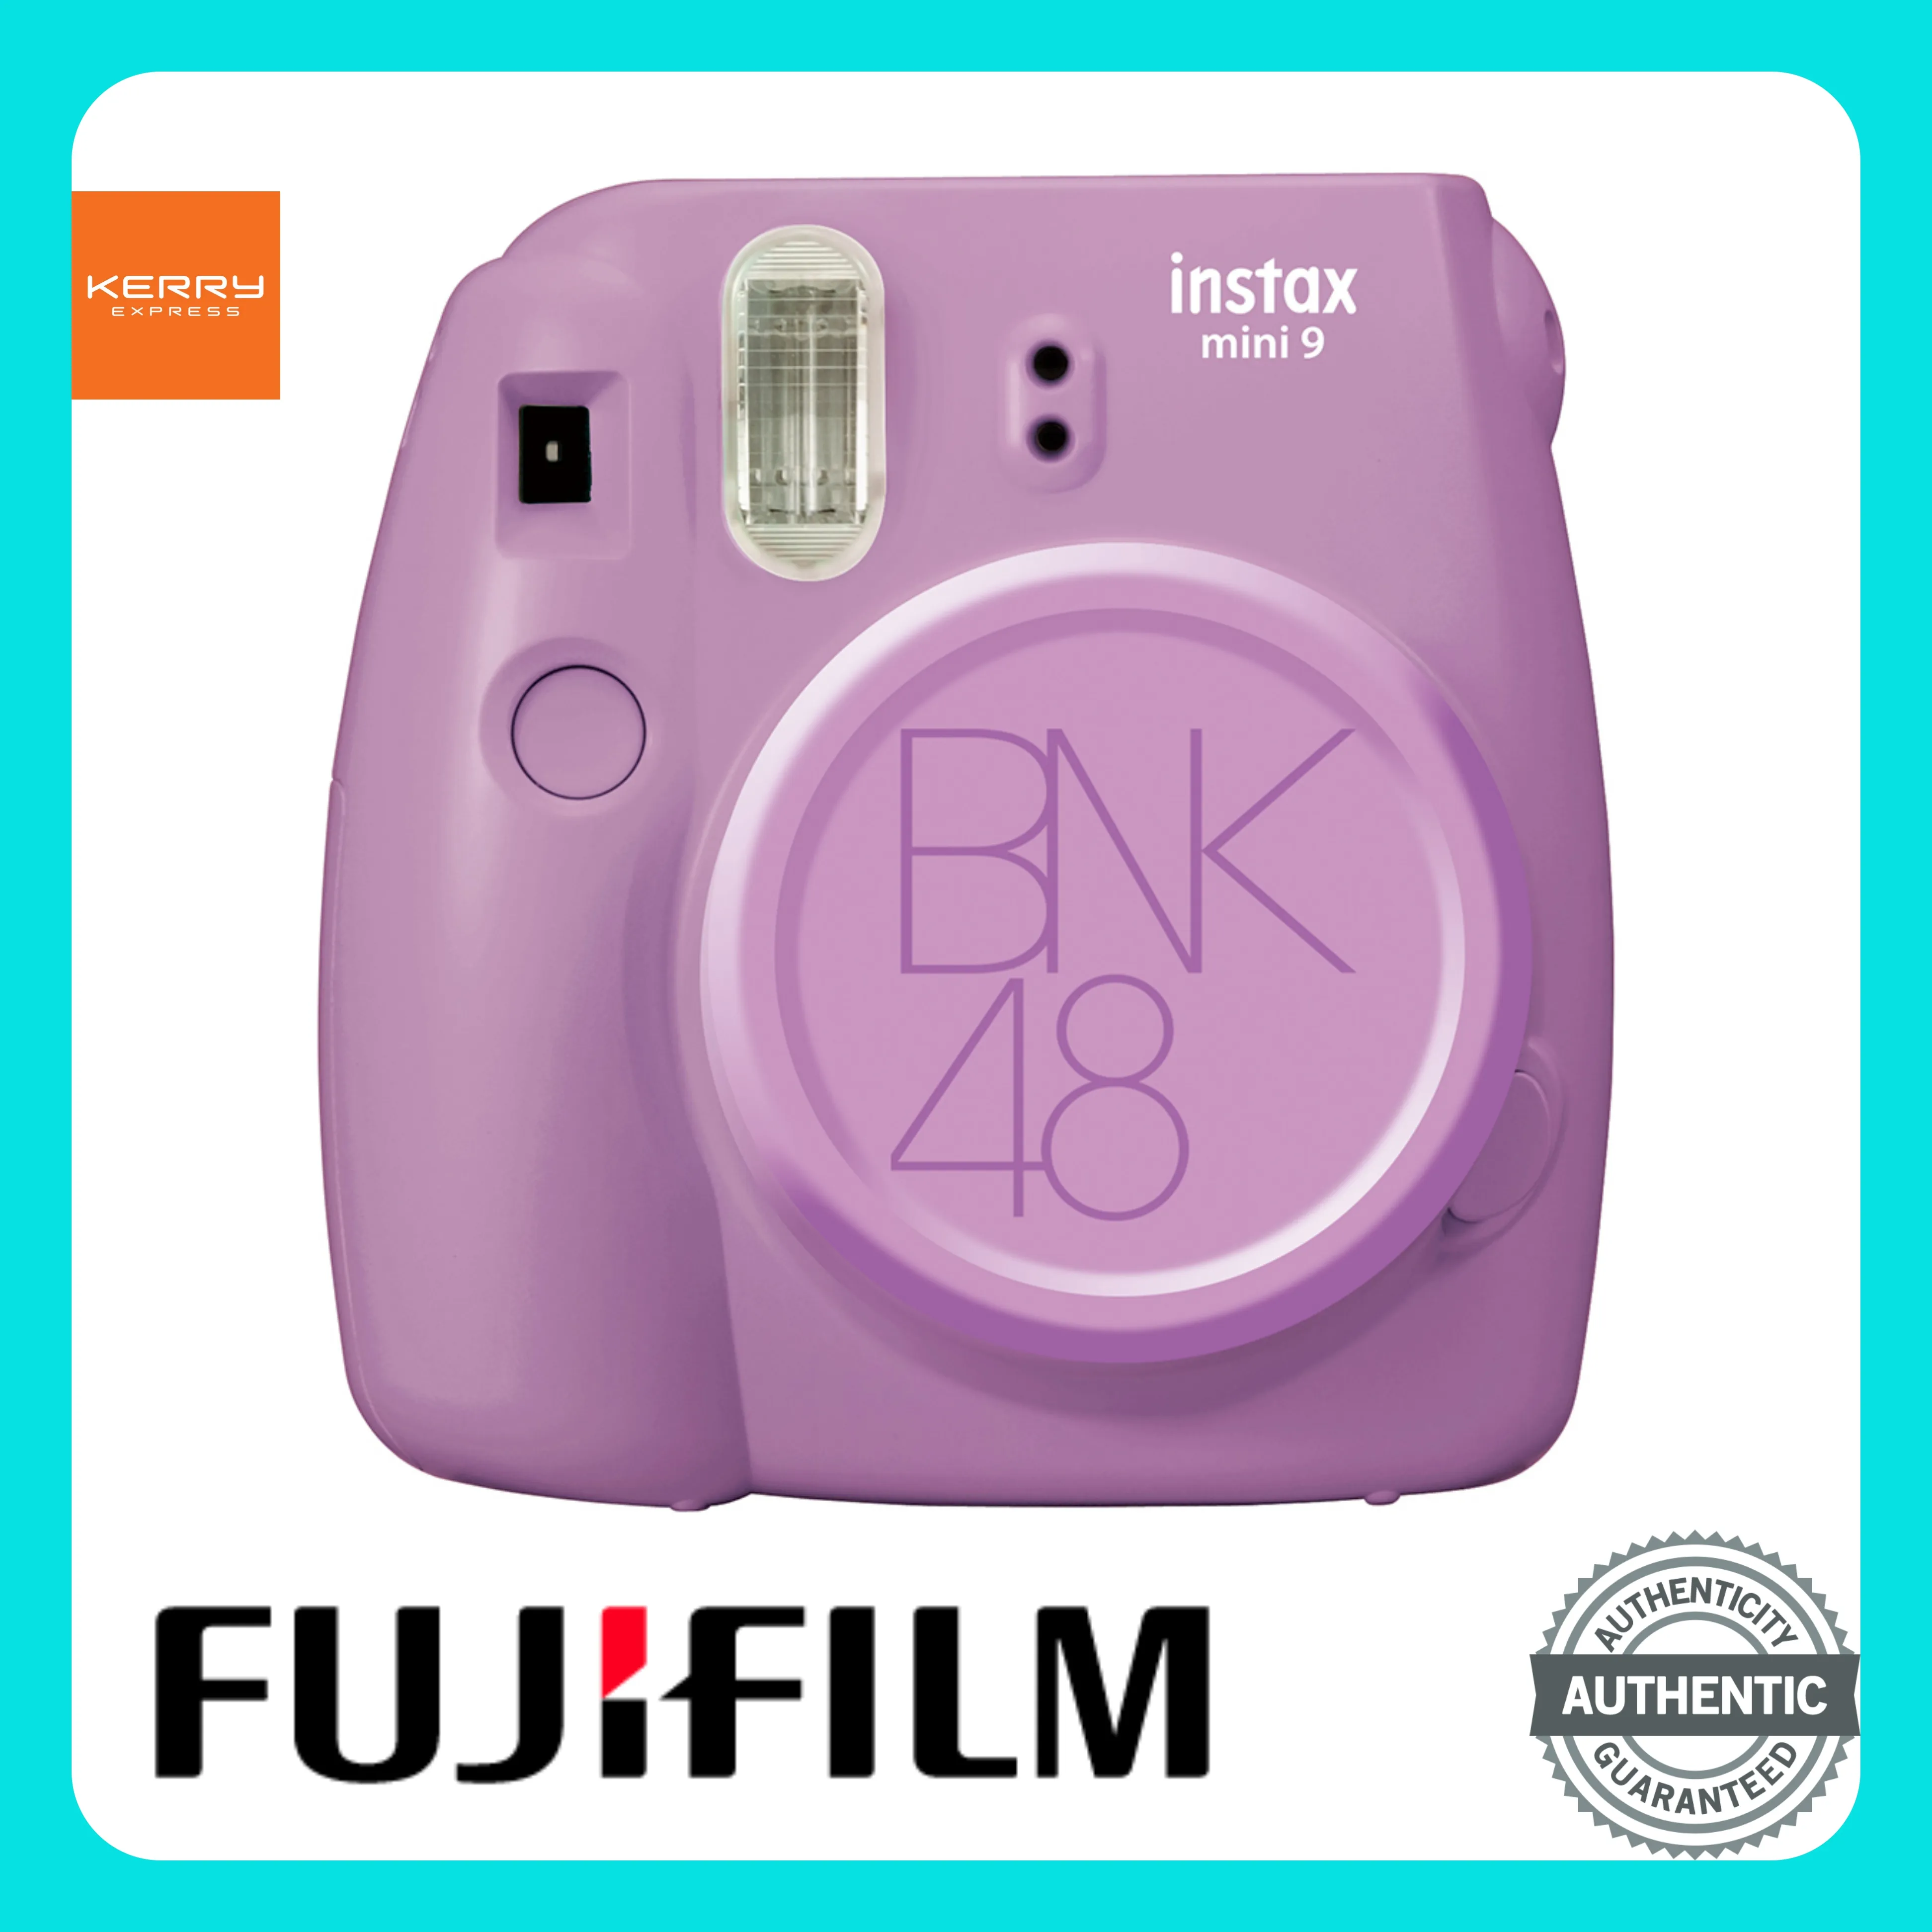 กล้องโพลารอยด์ Fujifilm Instax Mini 9 BNK48 (Limited Edition) พร้อมของแถมลิขสิทธิ์ bnk48 ในกล่อง! มาพร้อมแฟลชและช่องมองภาพในตัว กล้องฟิล์ม กล้อง instax กล้อง polaroid bnk 48 กล้องฟูจิ กล้อง bnk48 กล้องโพลารอยด์ fujifilm instax mini 9 ราคาถูก ของแท้100%